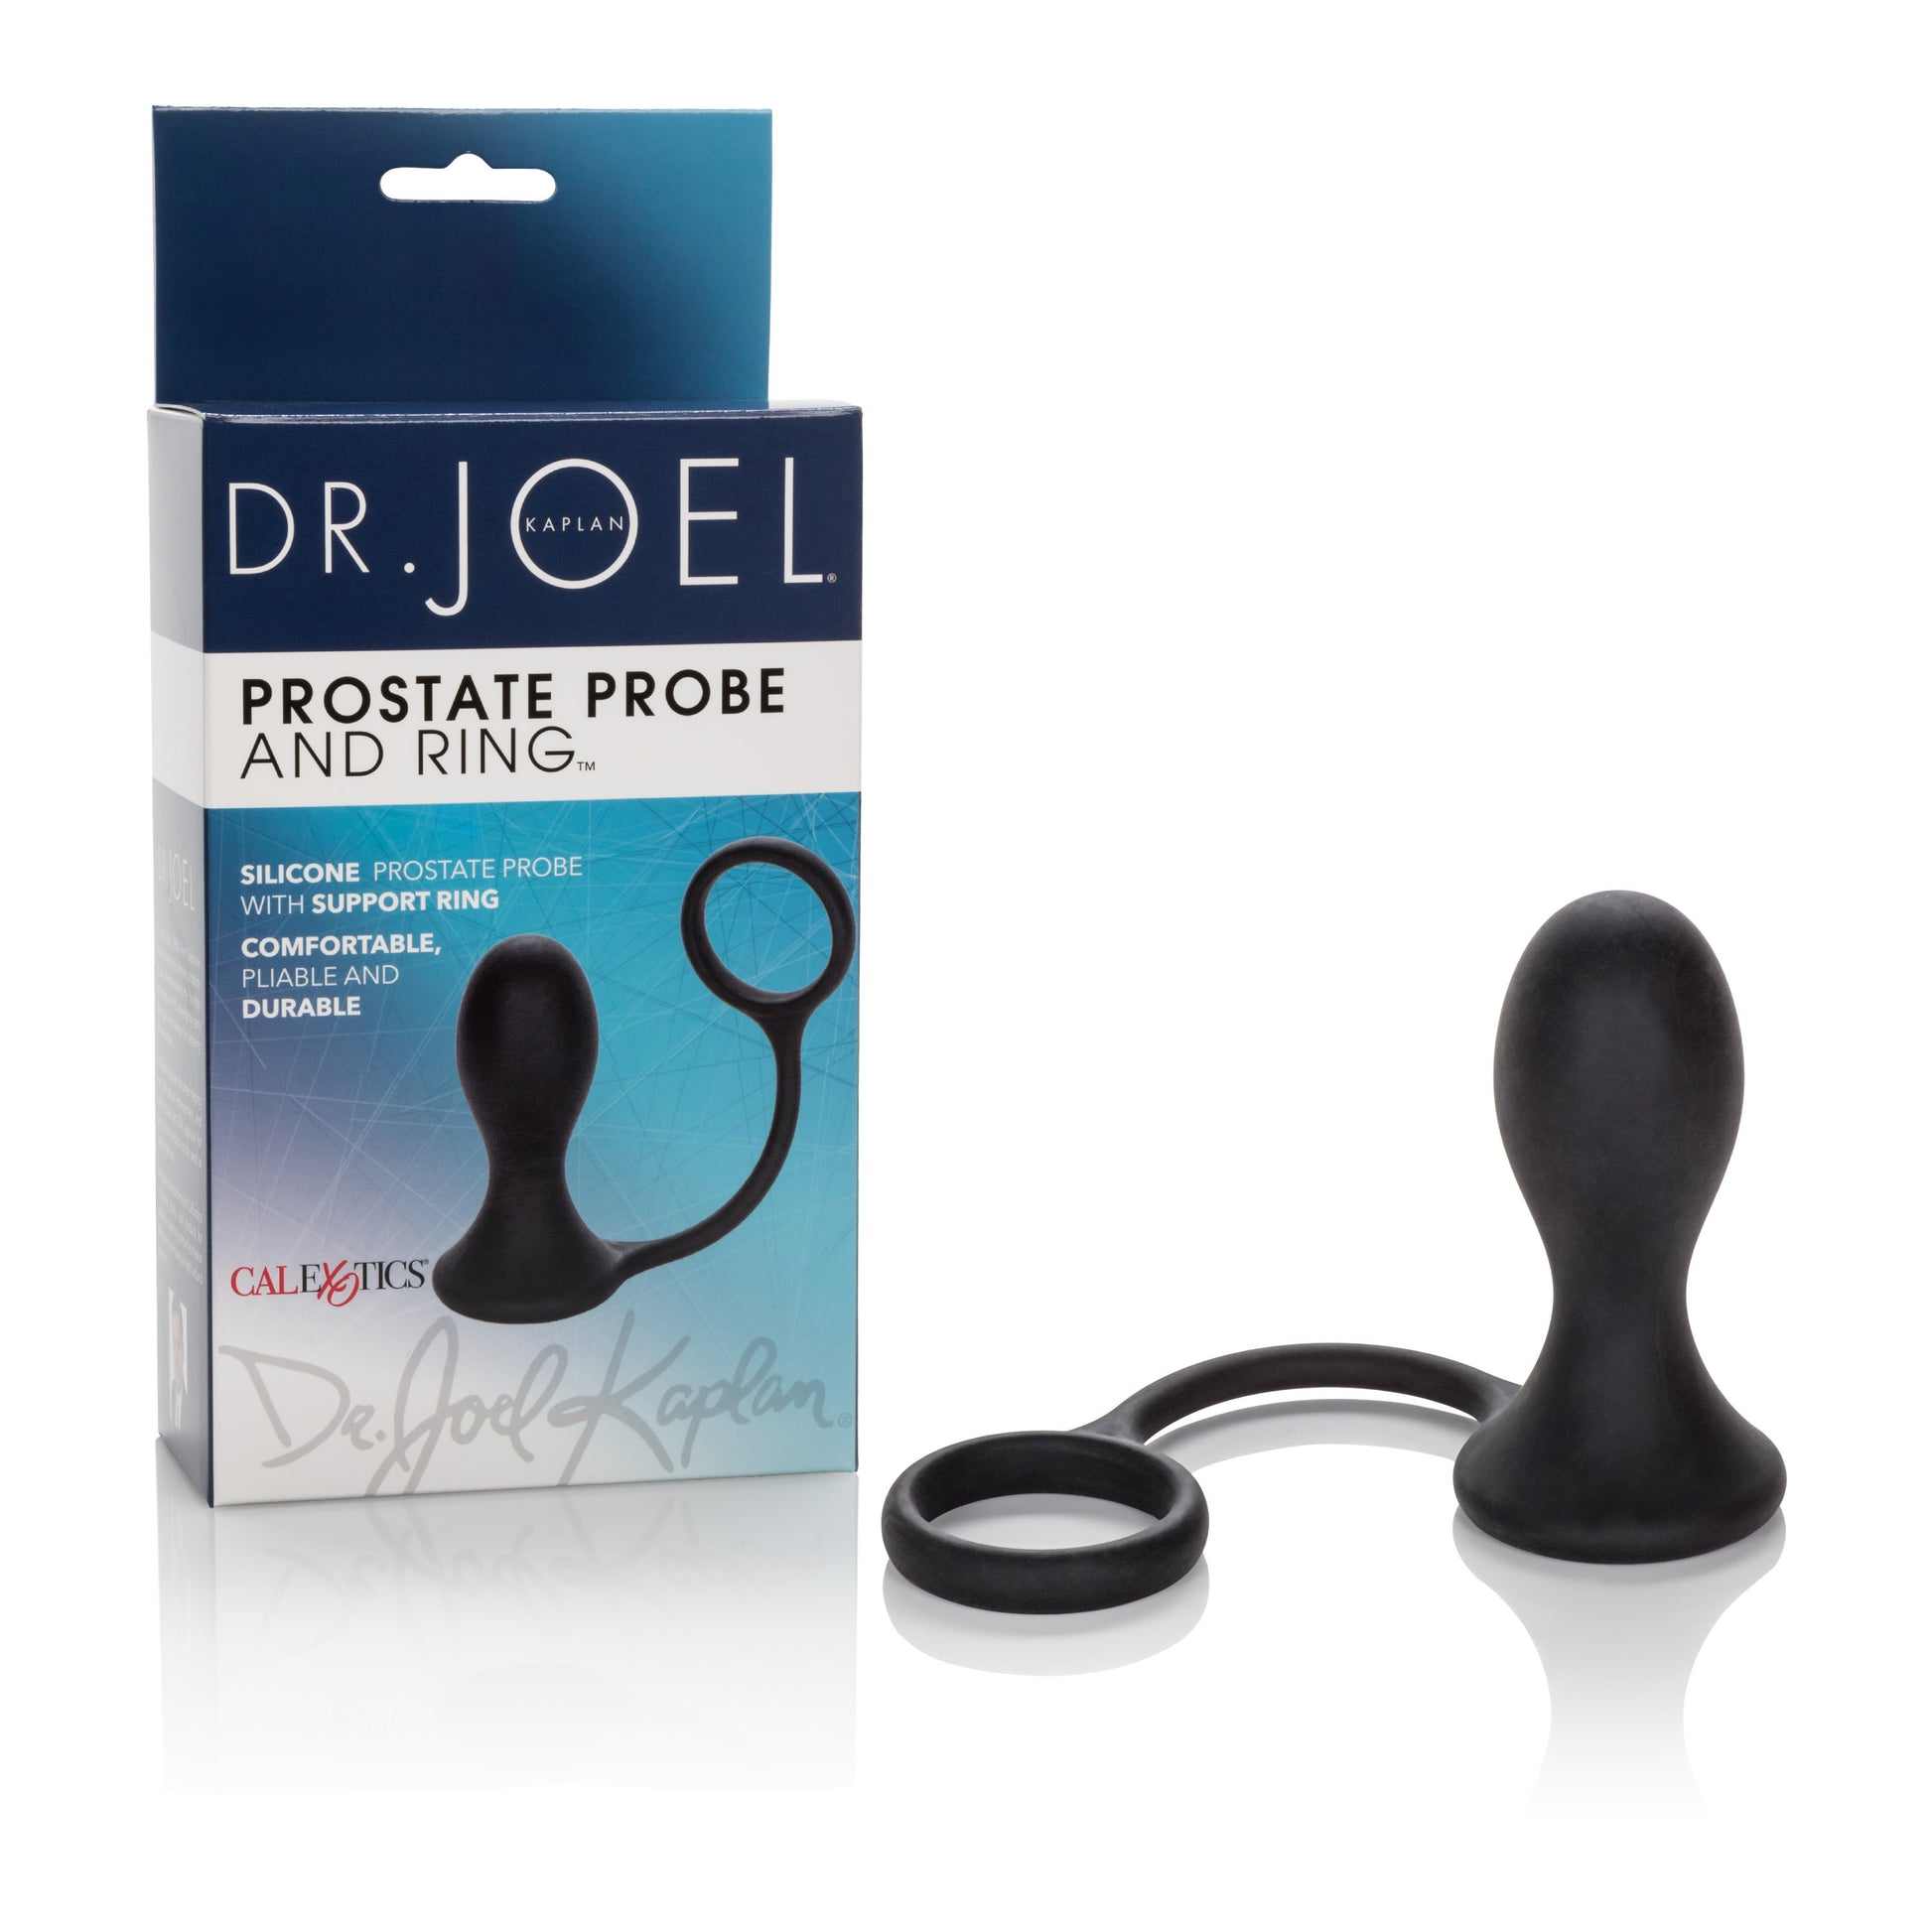 Dr. Joel Kaplan Prostate Probe and Ring - Black SE5664103